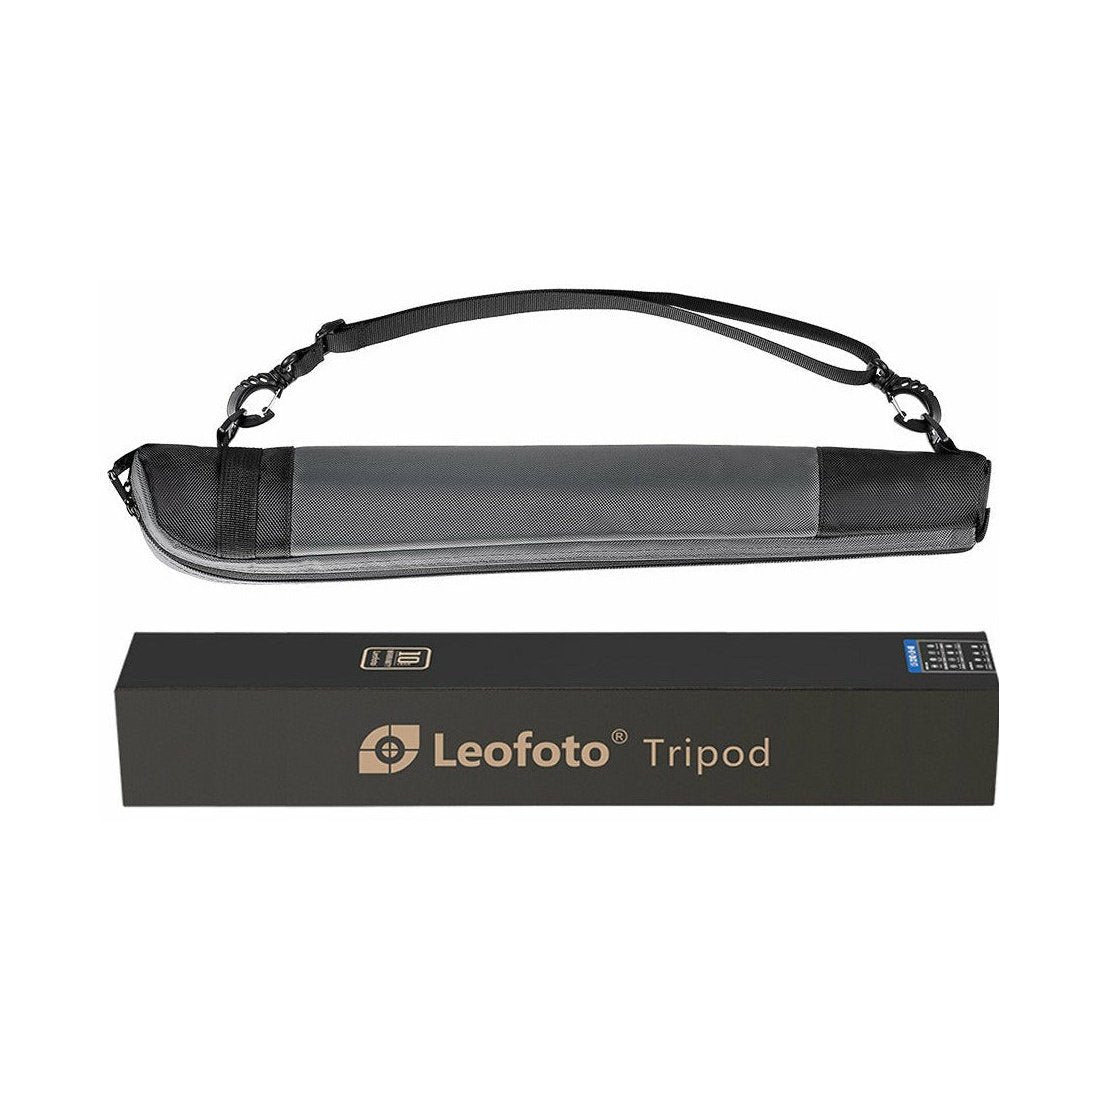 Leofoto MP-366C 6-Section Carbon Fiber Monopod leofoto-india